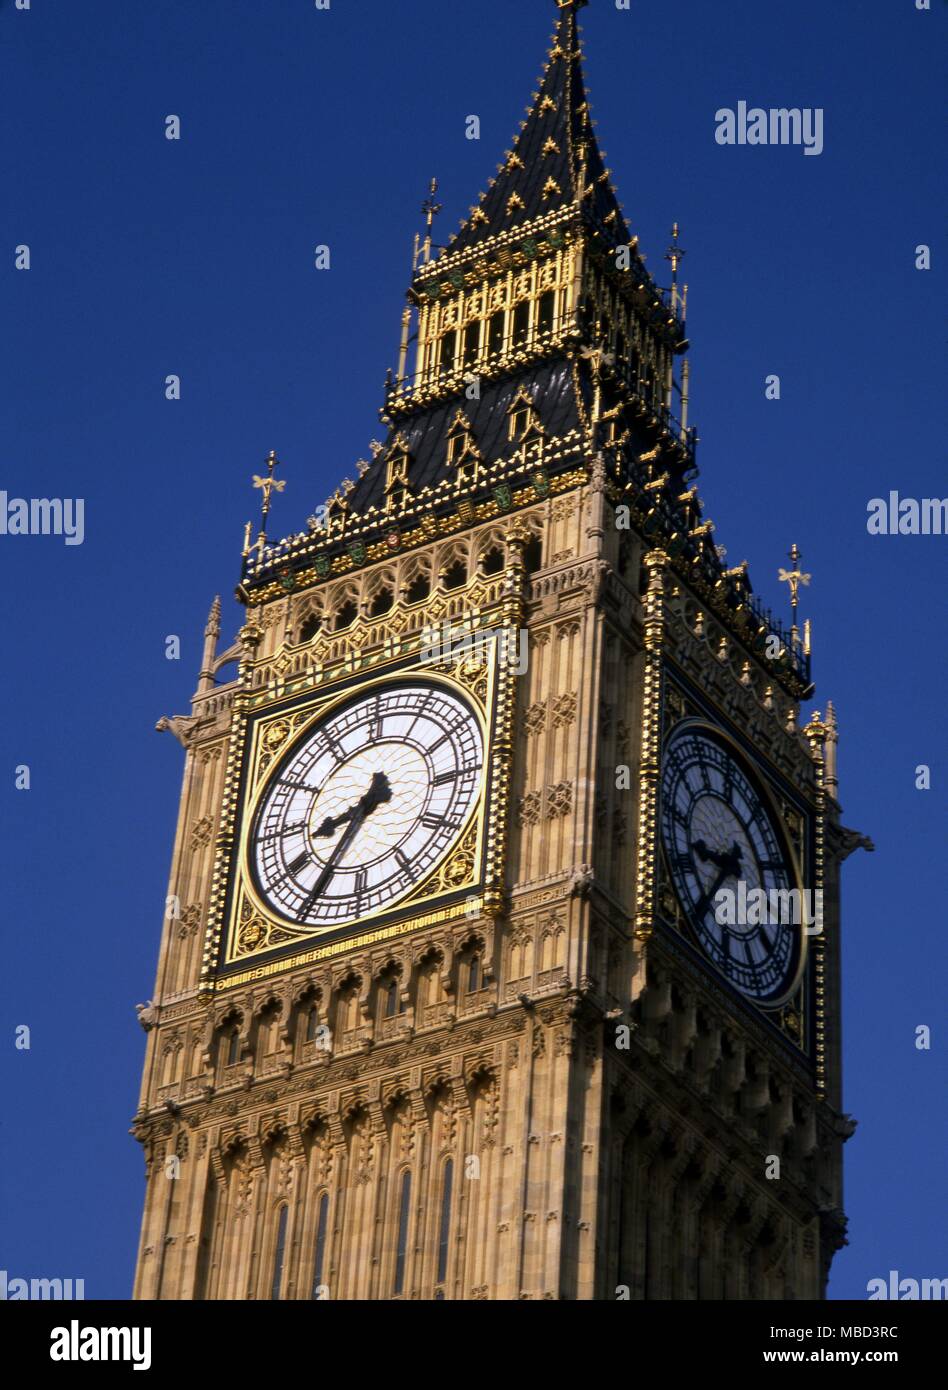 Londres - Westminster el reloj del Big Ben en la torre de Westminster ©2006 Charles Walker / Foto de stock